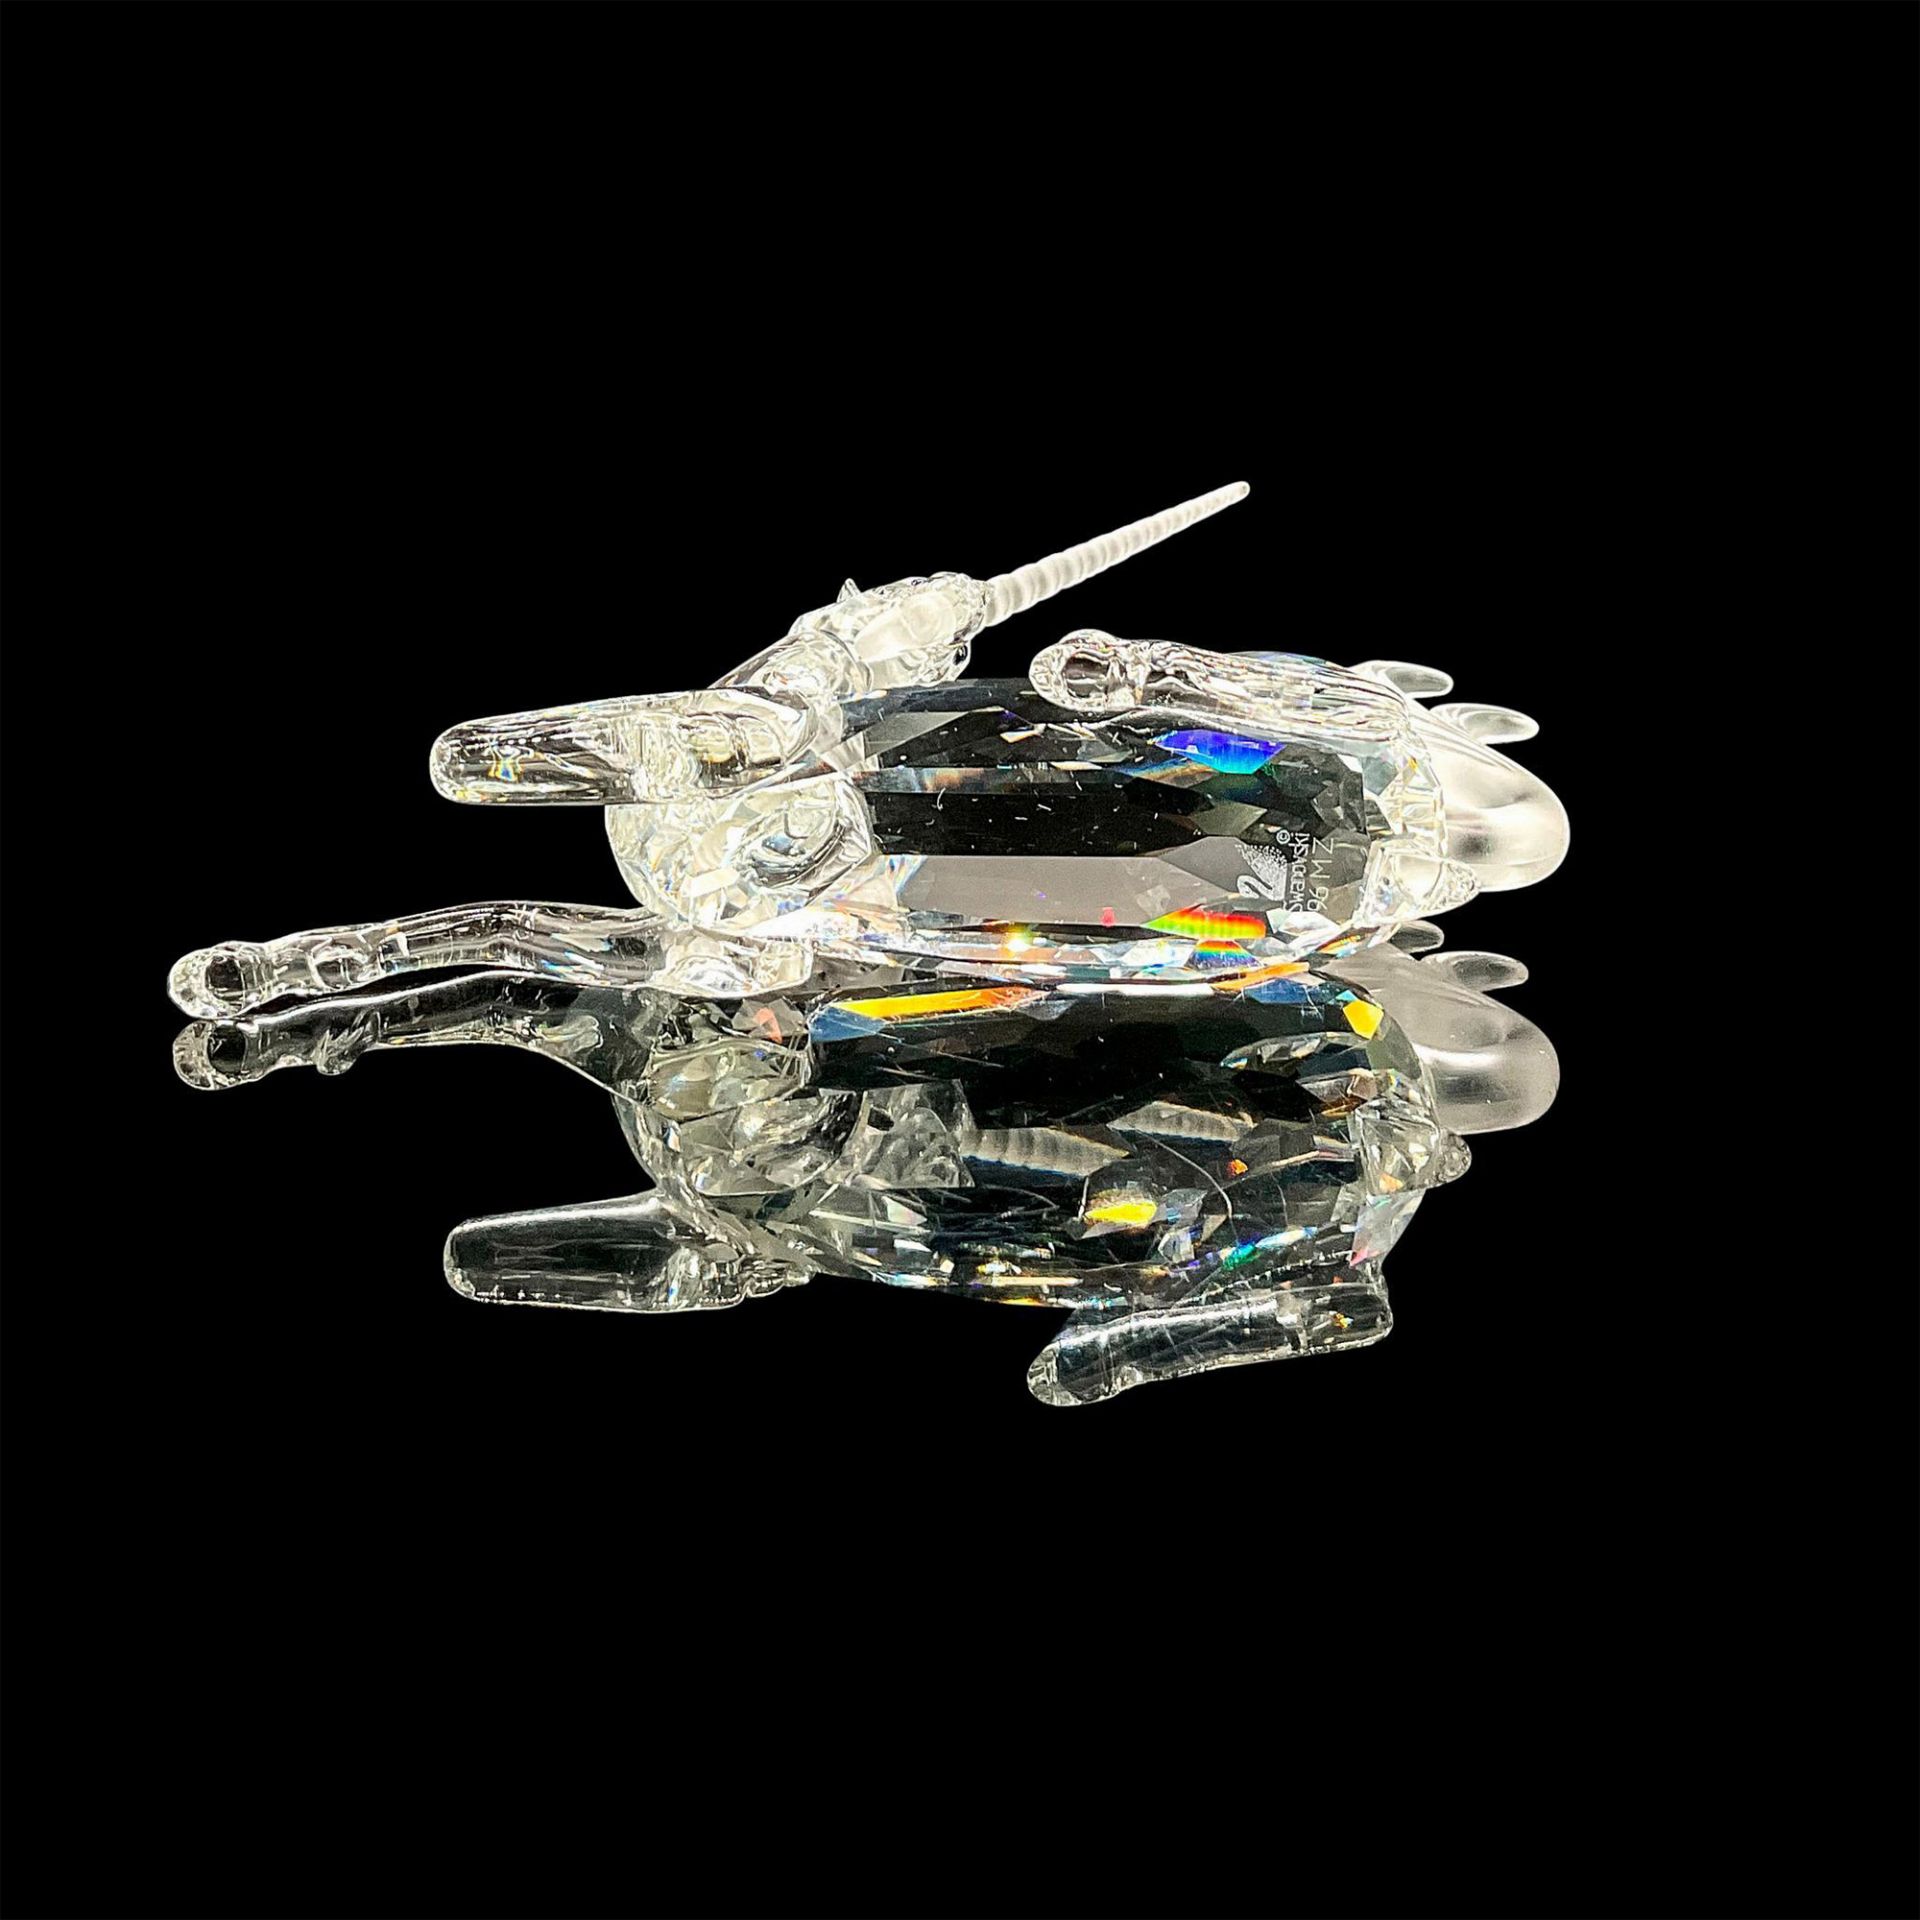 Swarovski Crystal Figurine, The Unicorn - Image 4 of 4